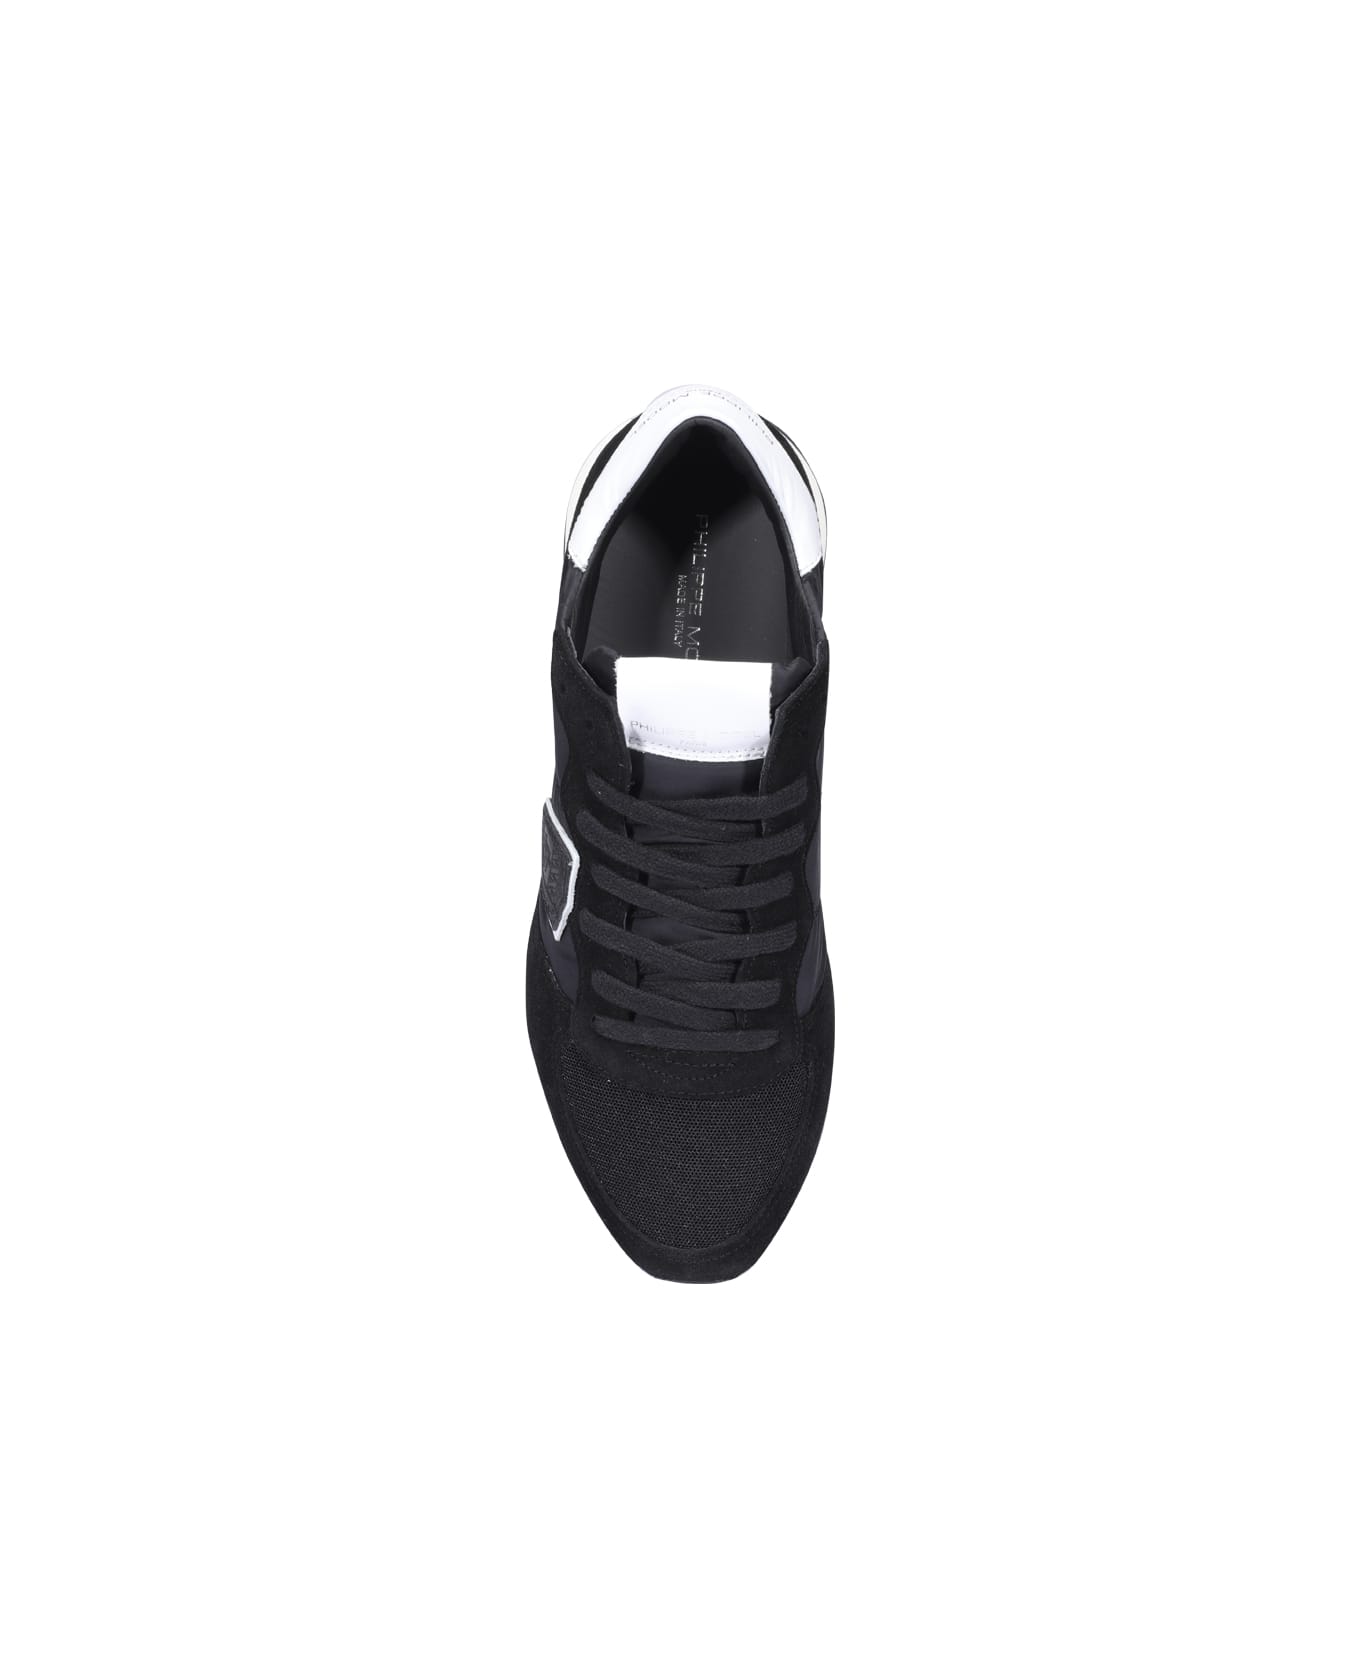 Philippe Model Trpx Veau Sneakers - Black スニーカー